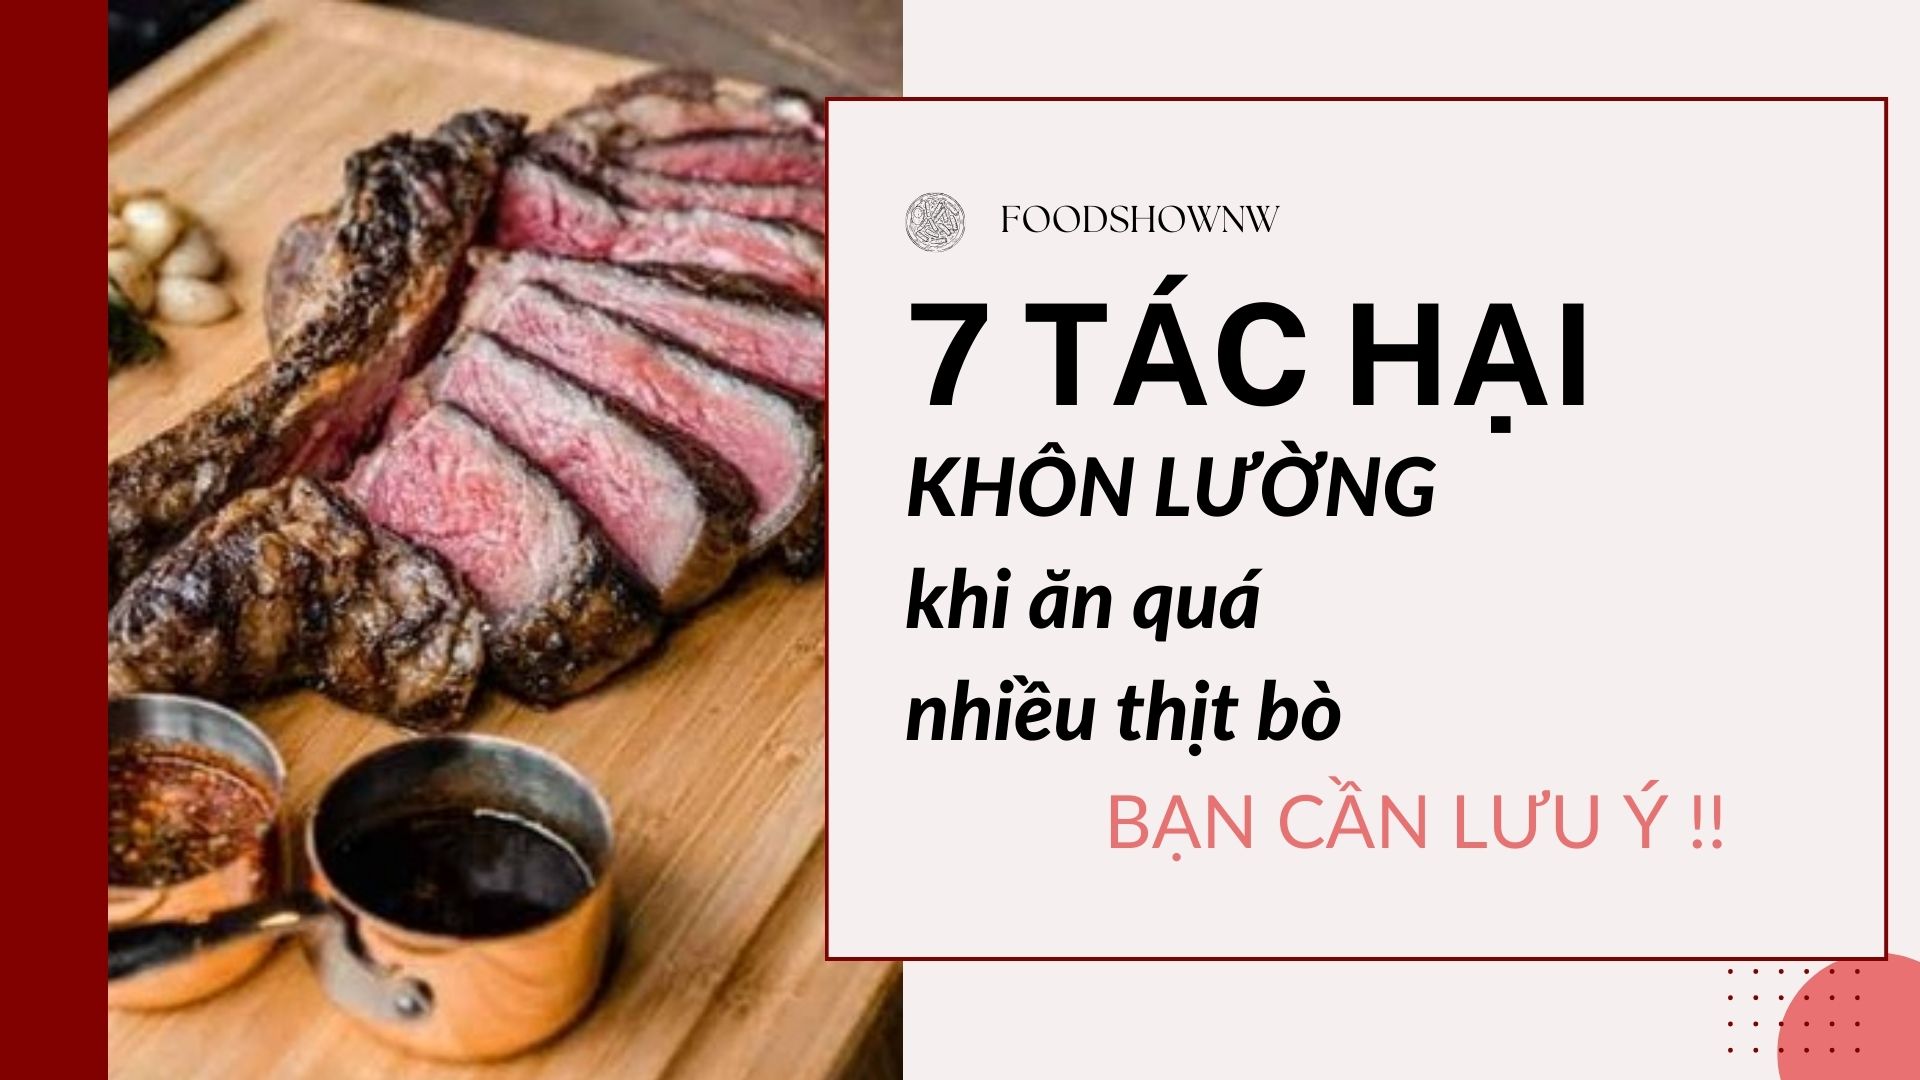 7 Tác hại khôn lường khi ăn thịt bò quá nhiều bạn nên lưu ý